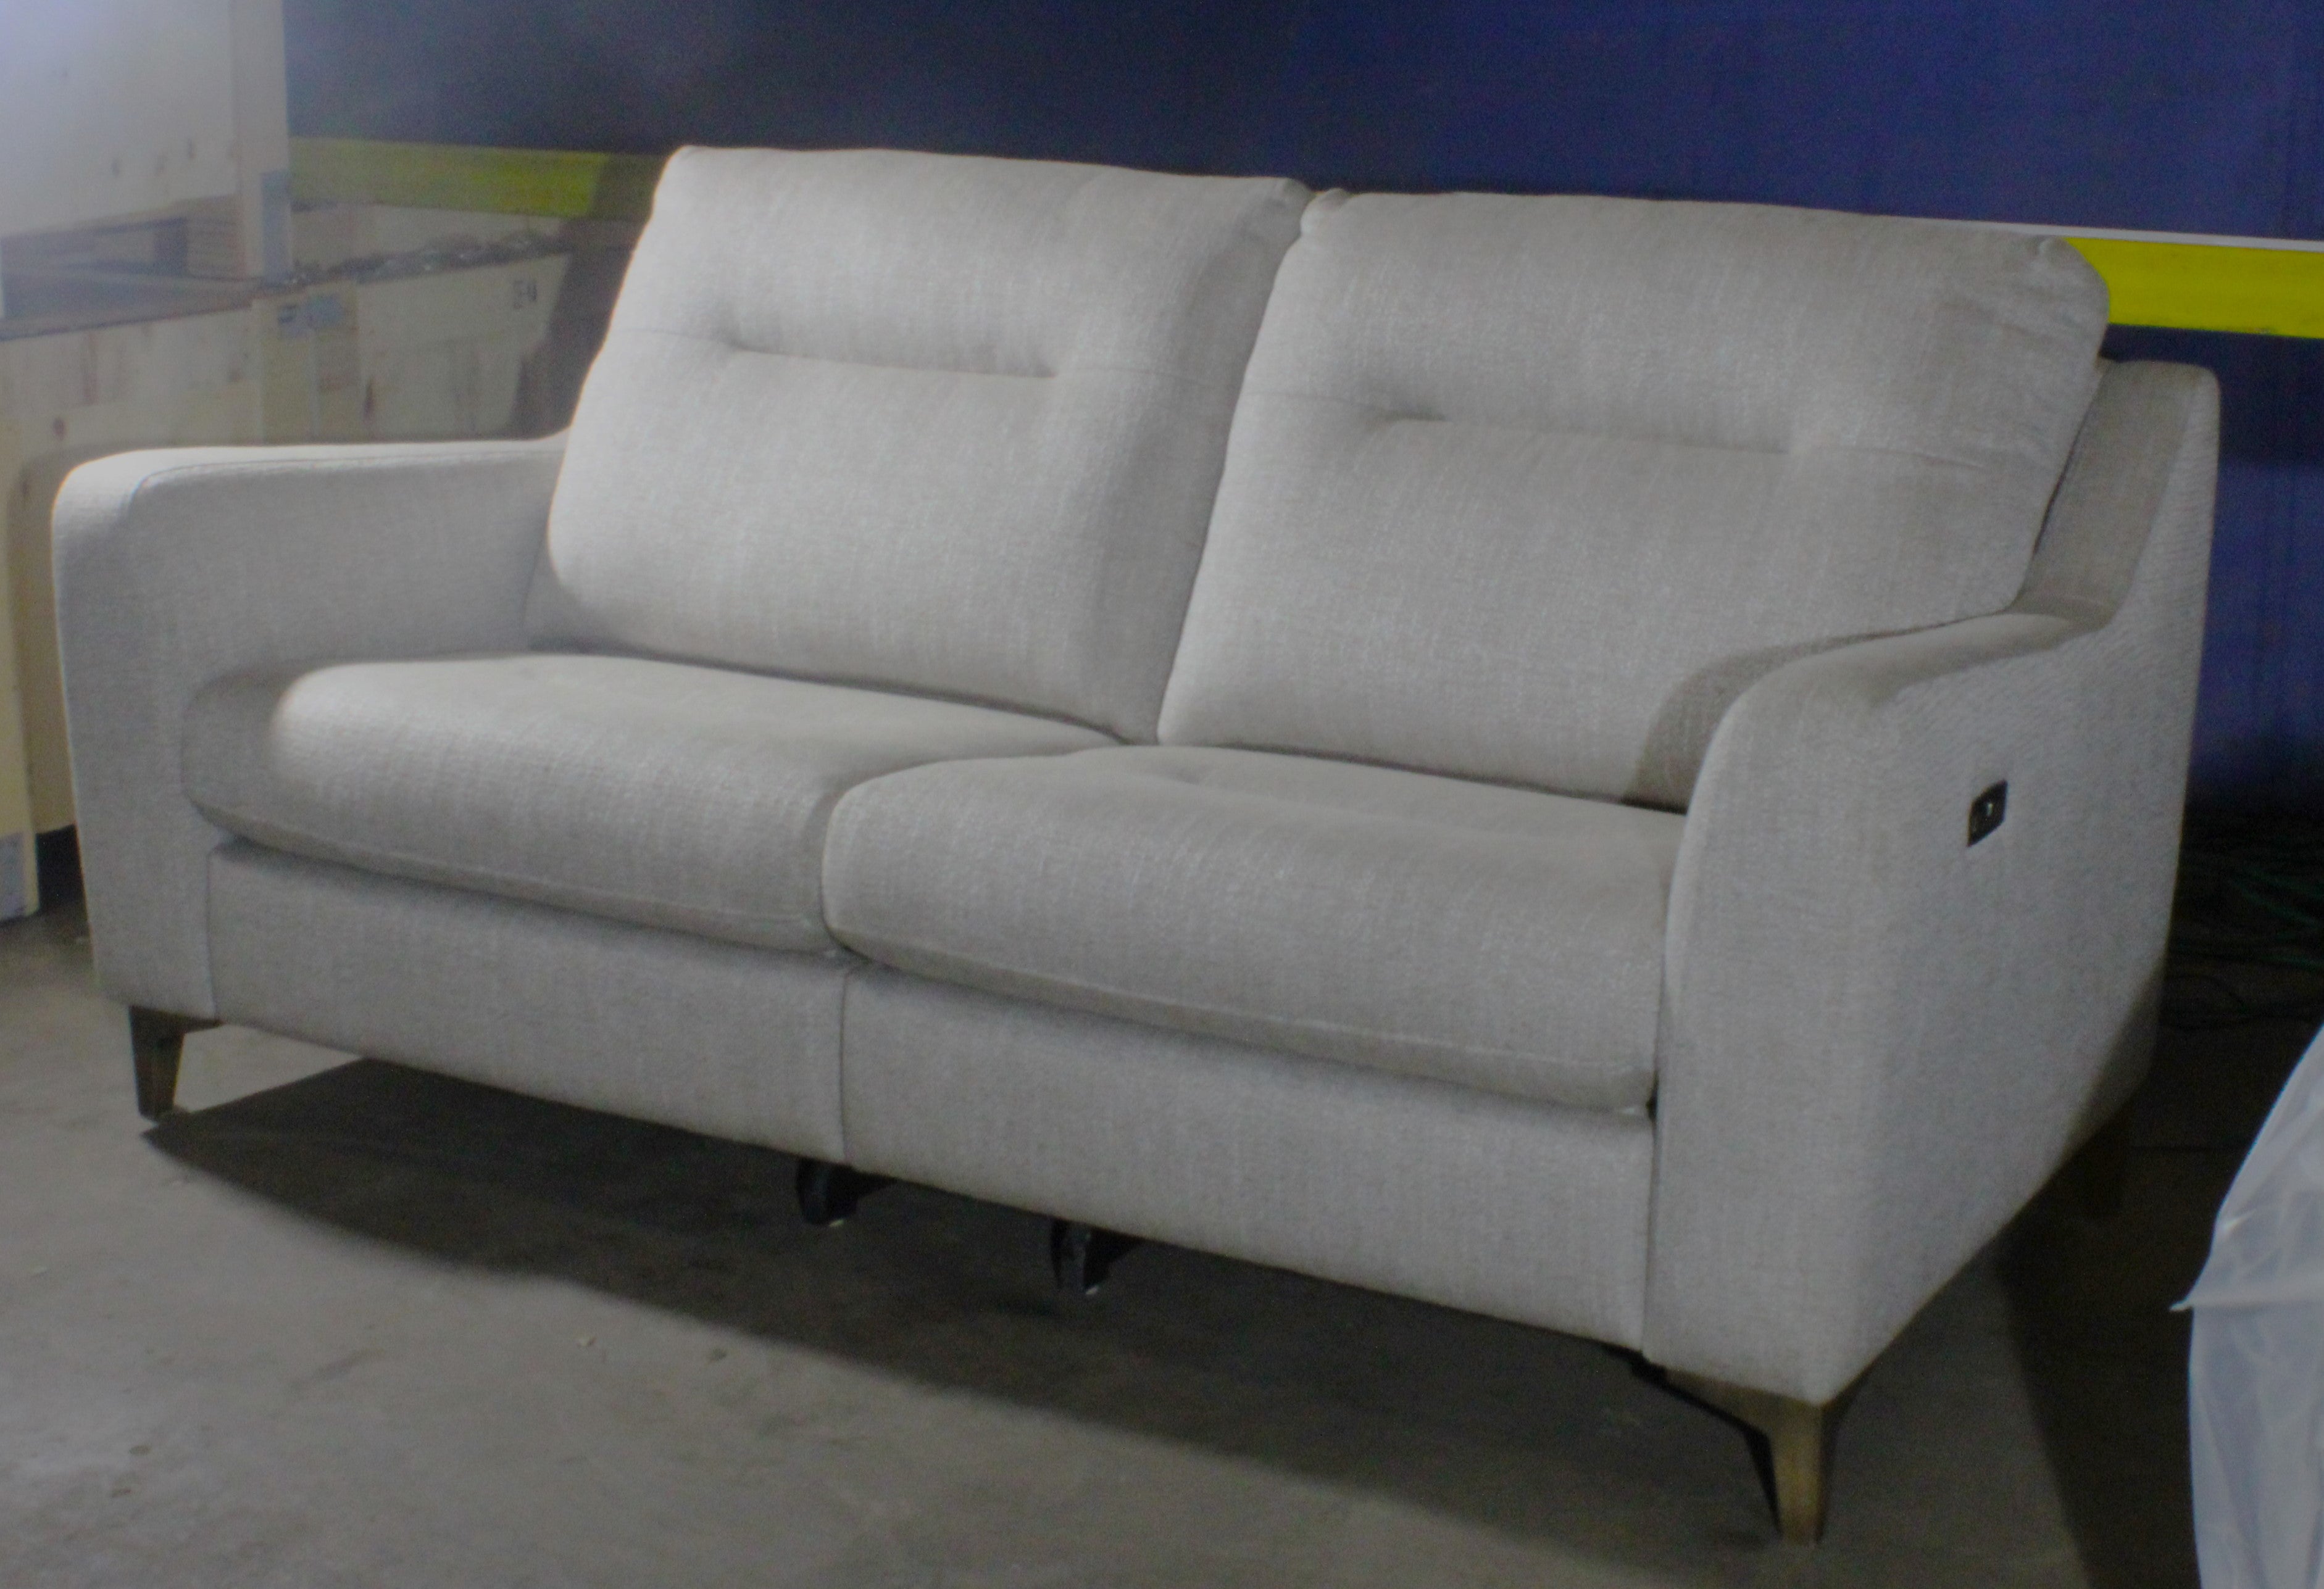 G-Plan: Arlo 2 Seater Sofa - Grey / Fabric - Manufacturer Return